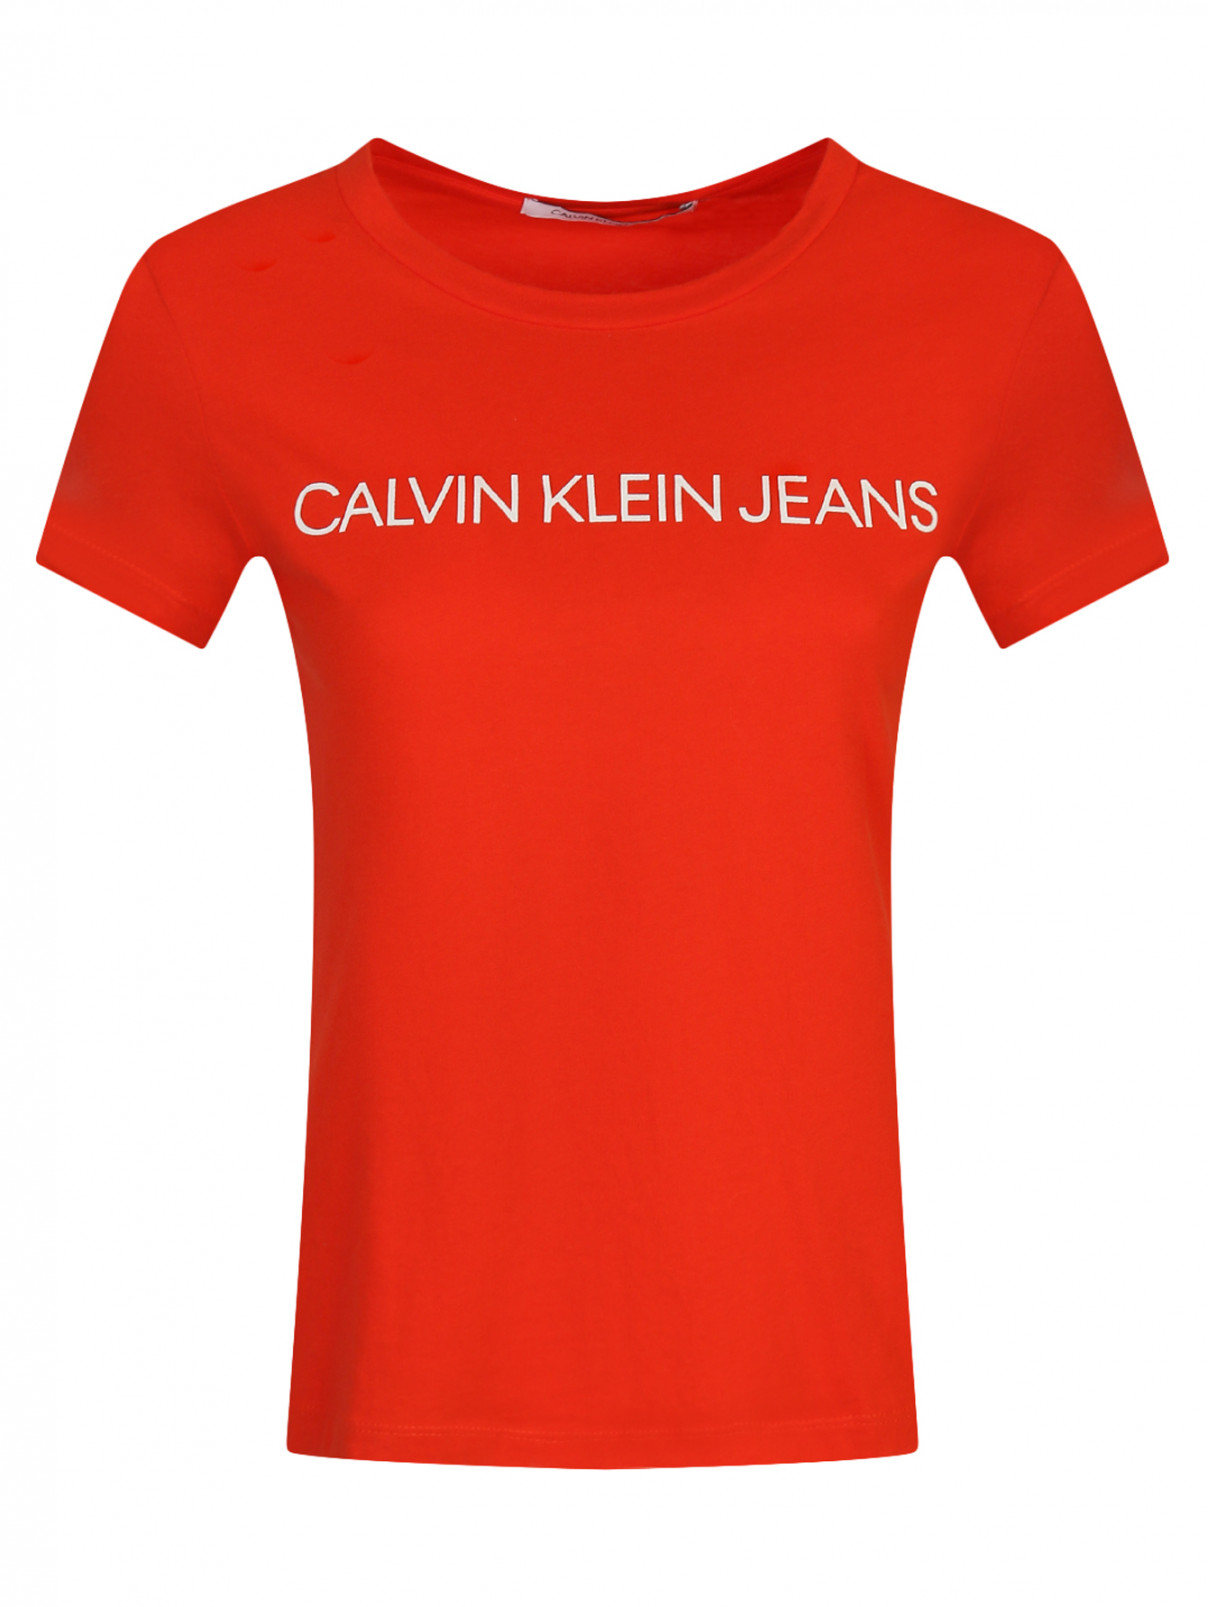 Футболка из хлопка с принтом Calvin Klein  –  Общий вид  – Цвет:  Красный